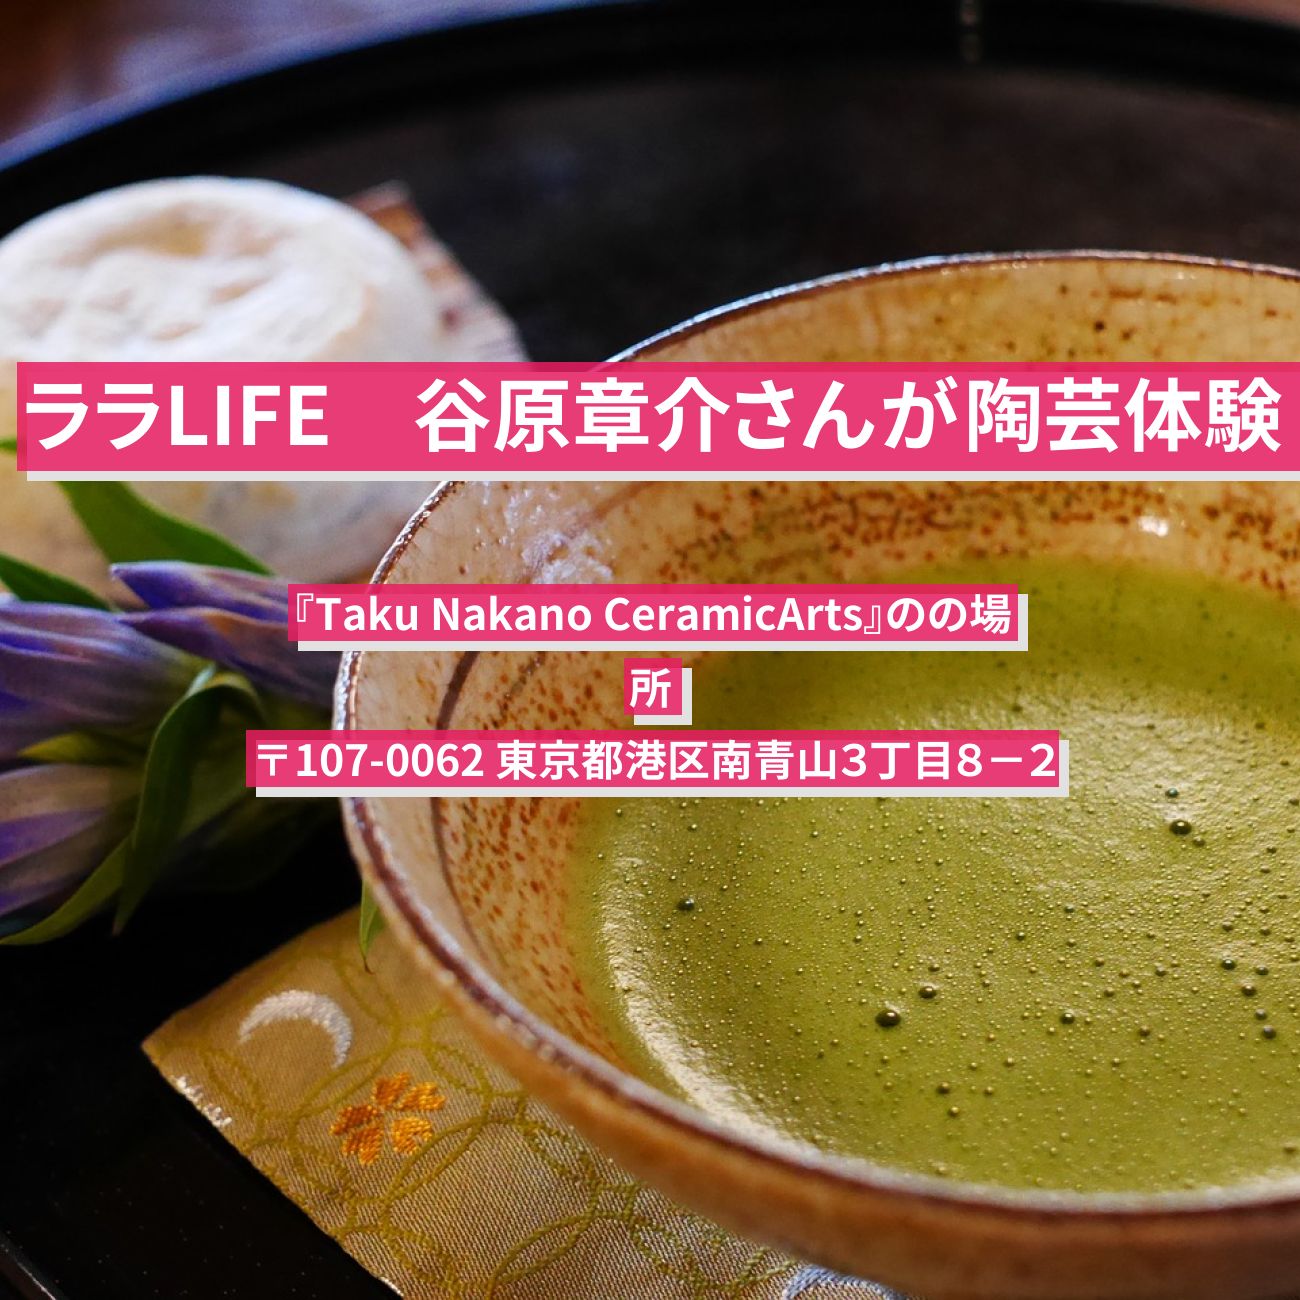 【ララLIFE】谷原章介さんが陶芸体験『Taku Nakano CeramicArts』の場所